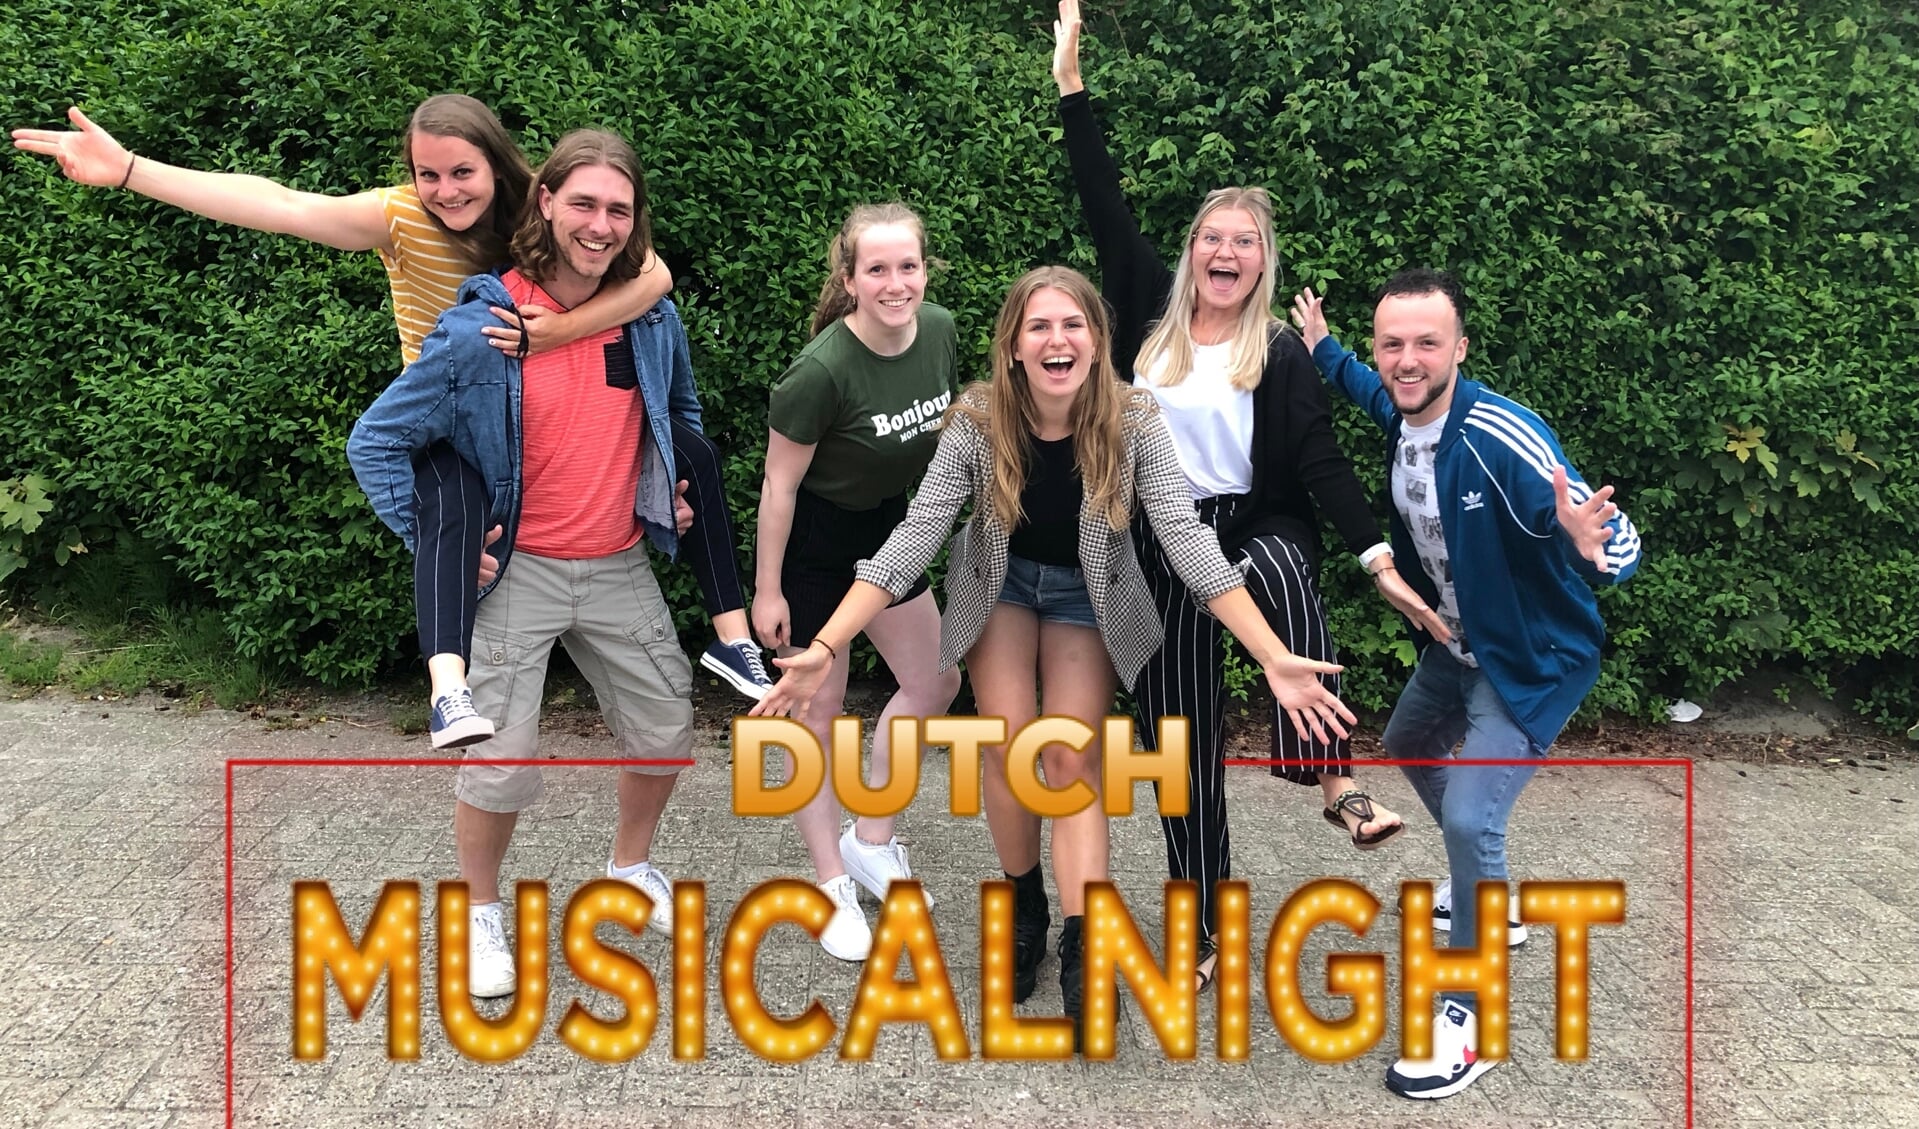 De zes Thalia-talenten die mee mogen doen aan de Dutch Musicalnight. 